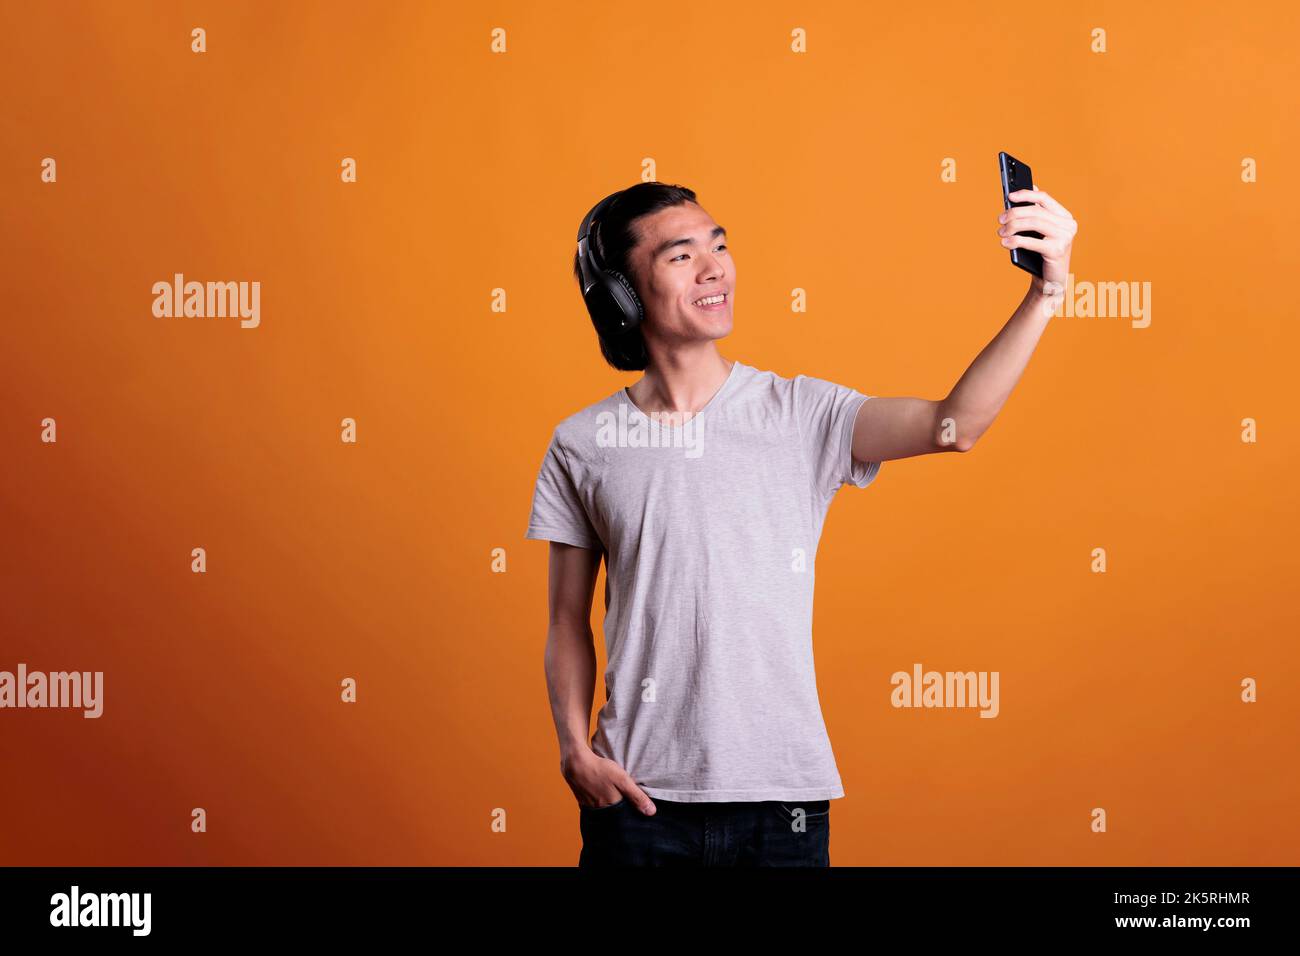 Lächelnder asiatischer Teenager in kabellosen Kopfhörern, der mit der Smartphone-Frontkamera Selfie macht. Junger, fröhlicher, attraktiver Mann in Kopfhörern, der Mobiltelefon hält und für Fotos posiert Stockfoto